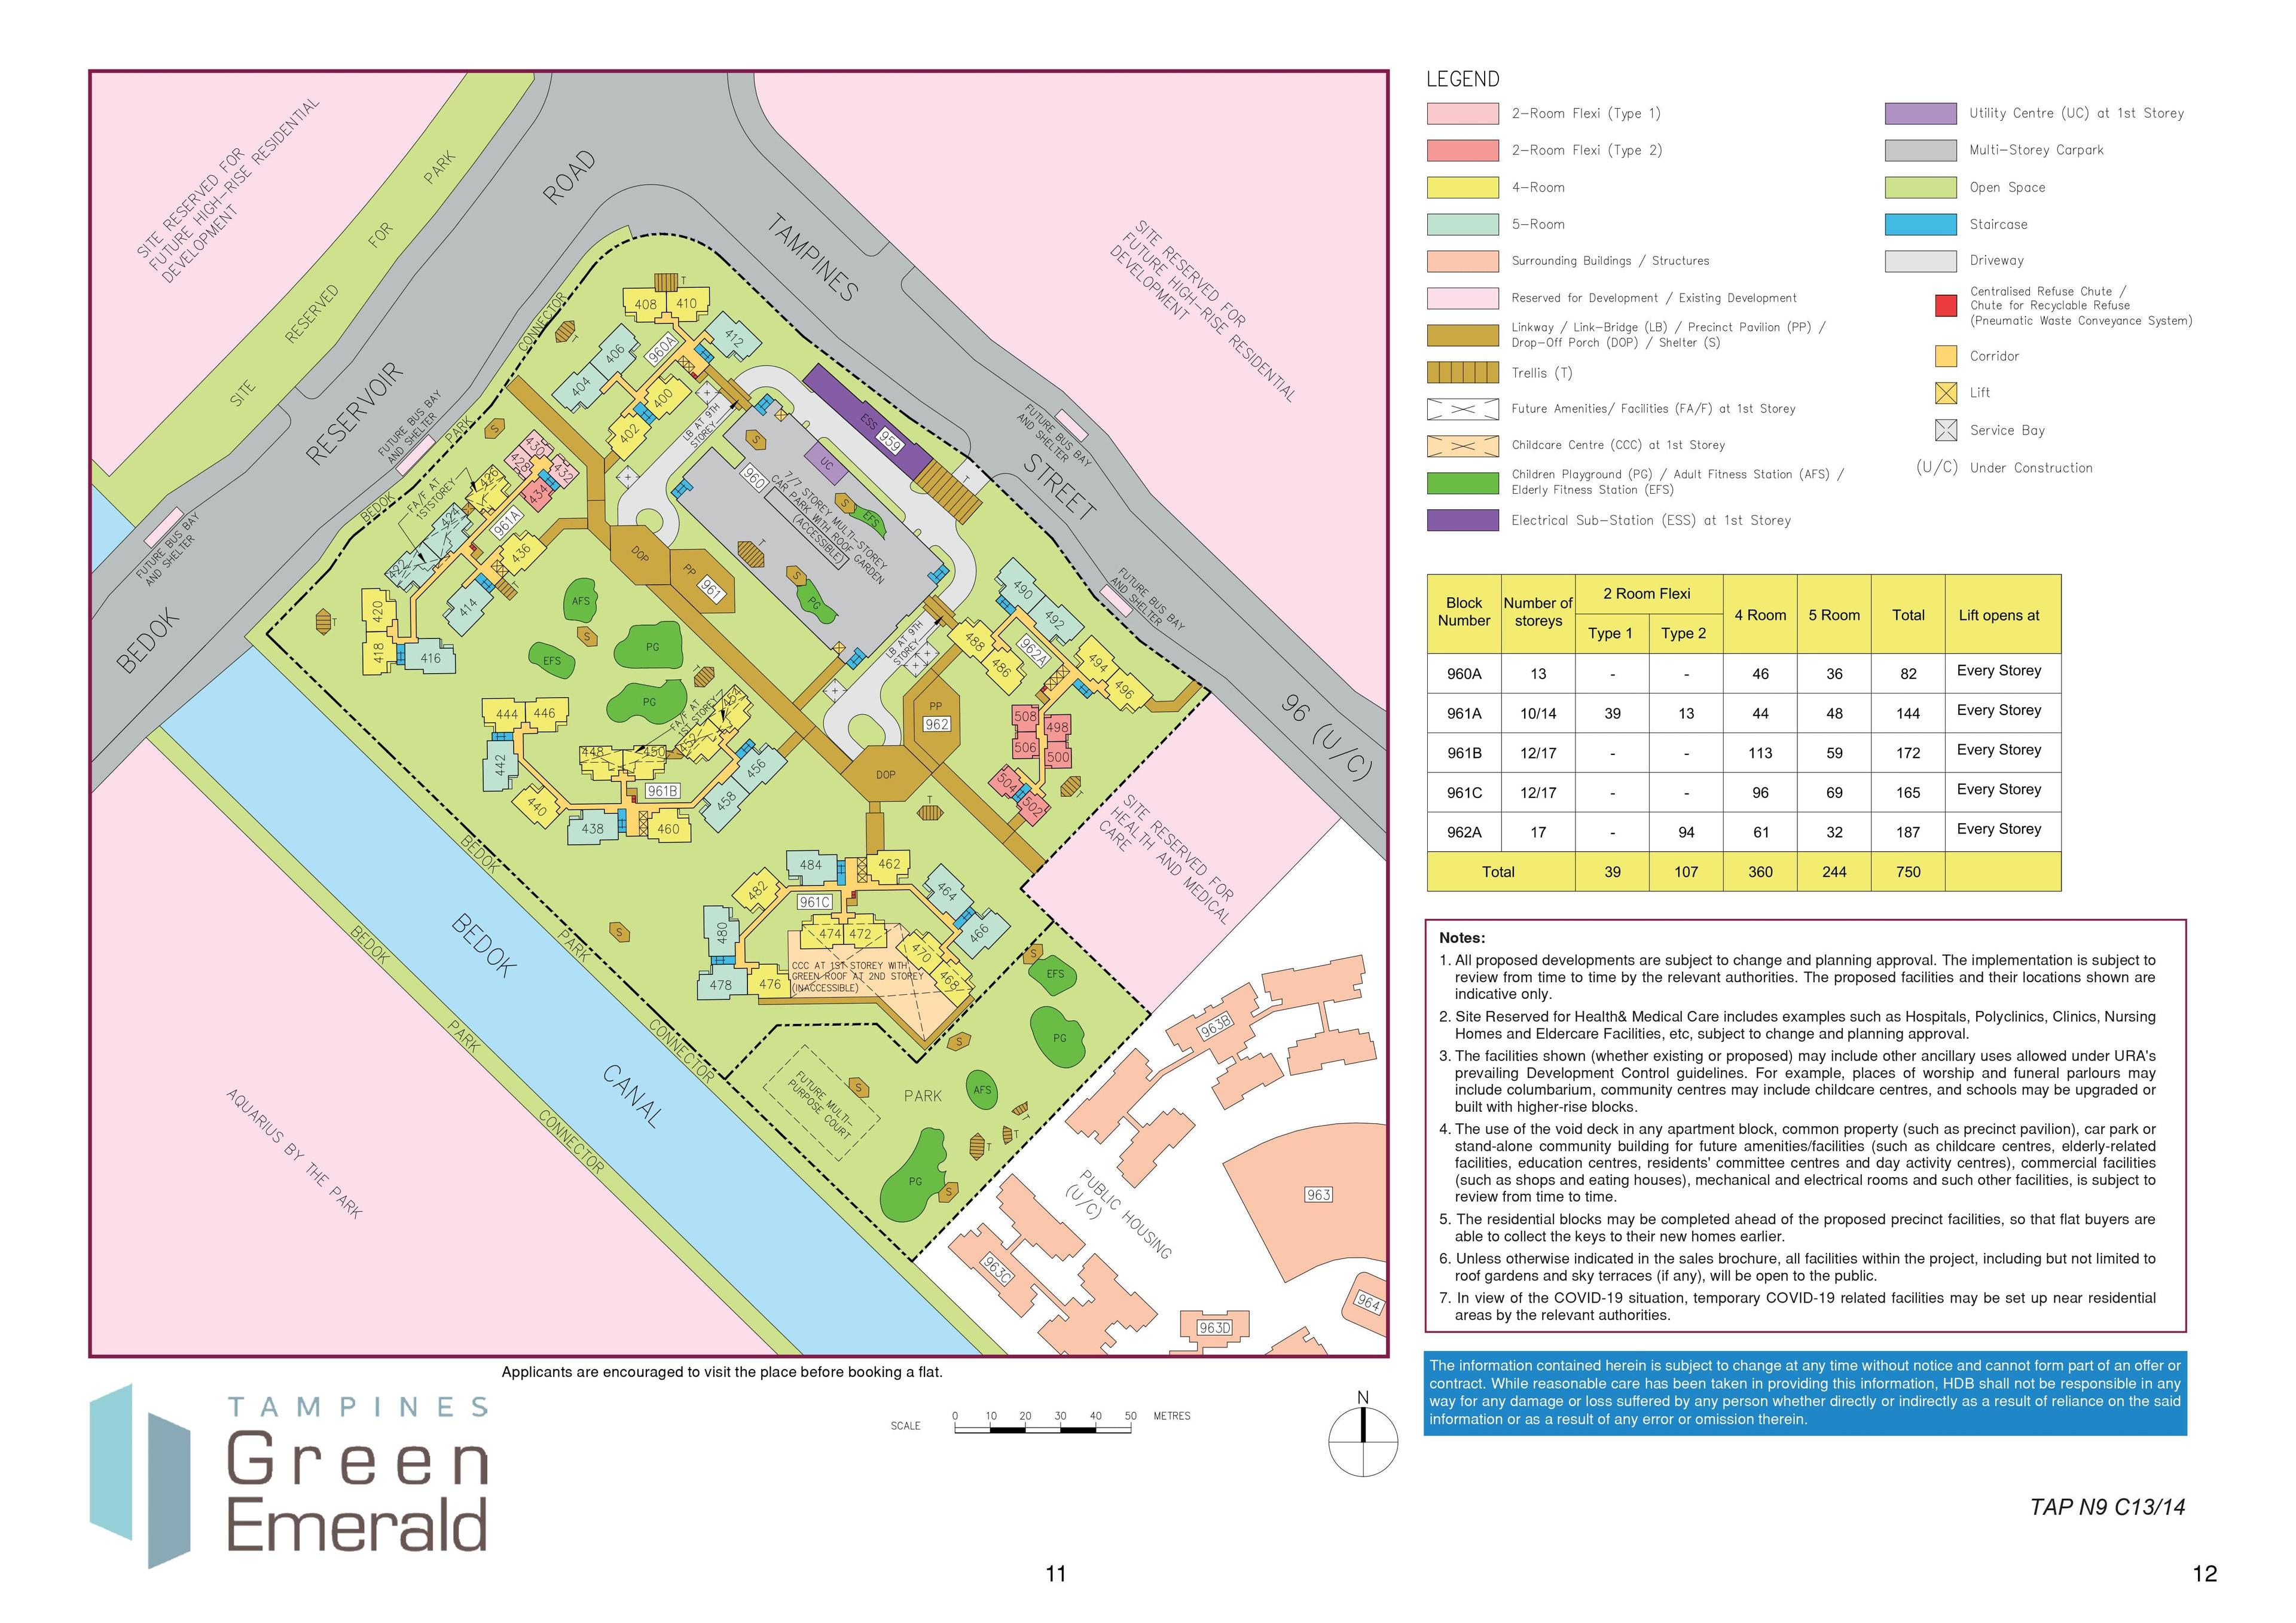 Tampines GreenEmerald site-plan